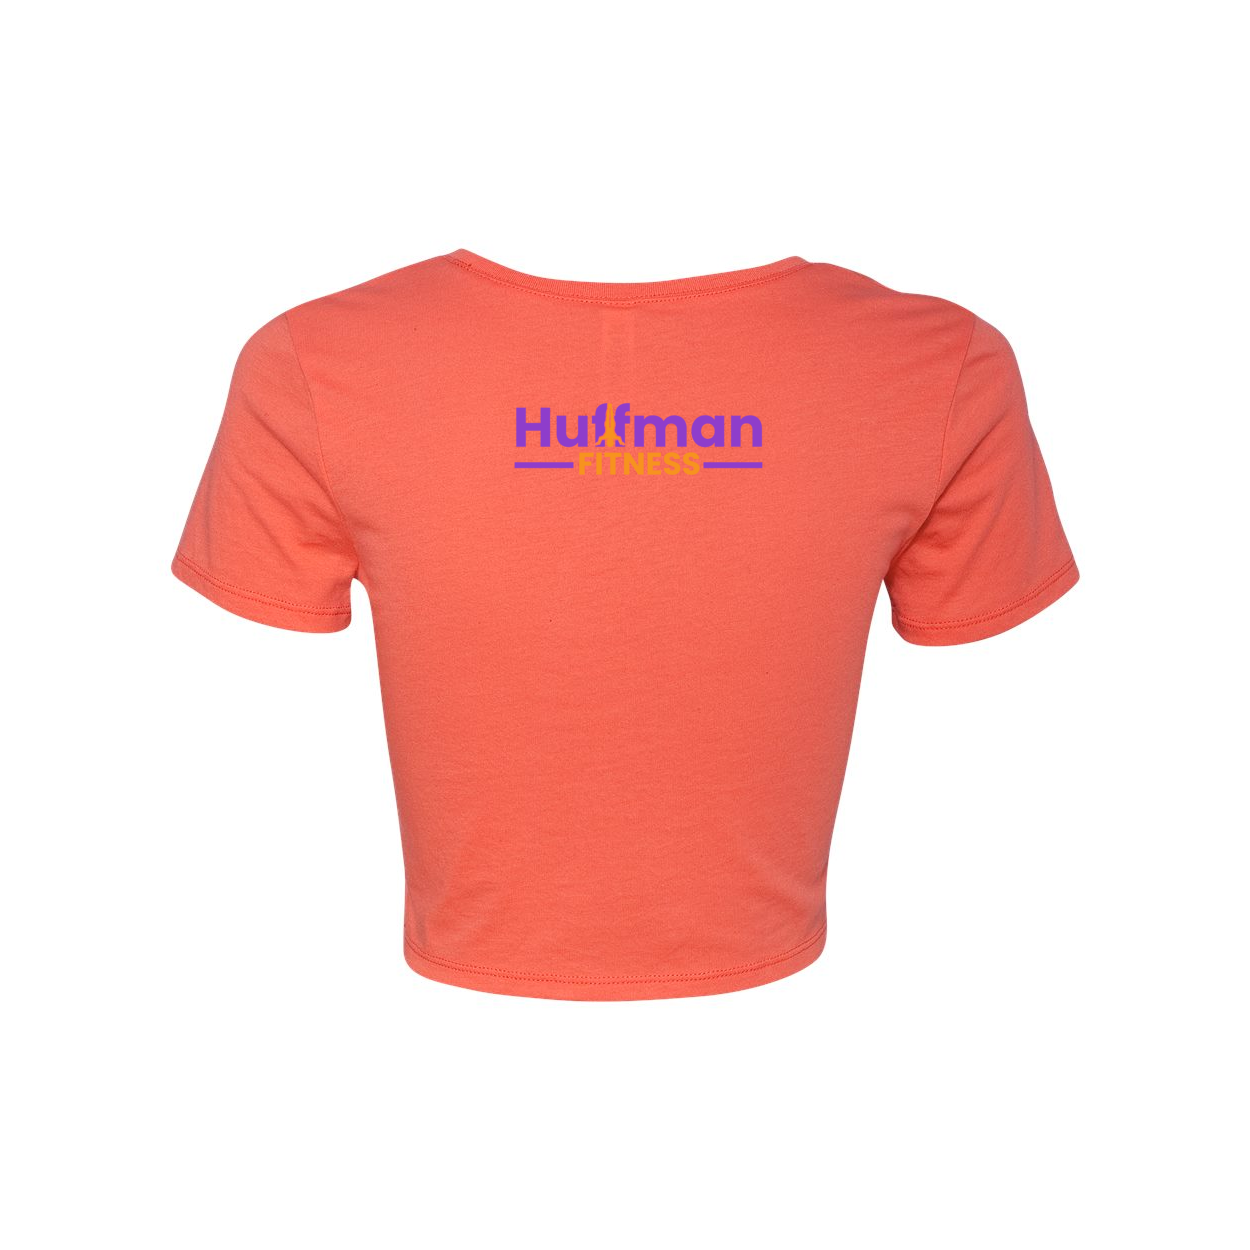 Huffman Fitness Ladies Crop Top